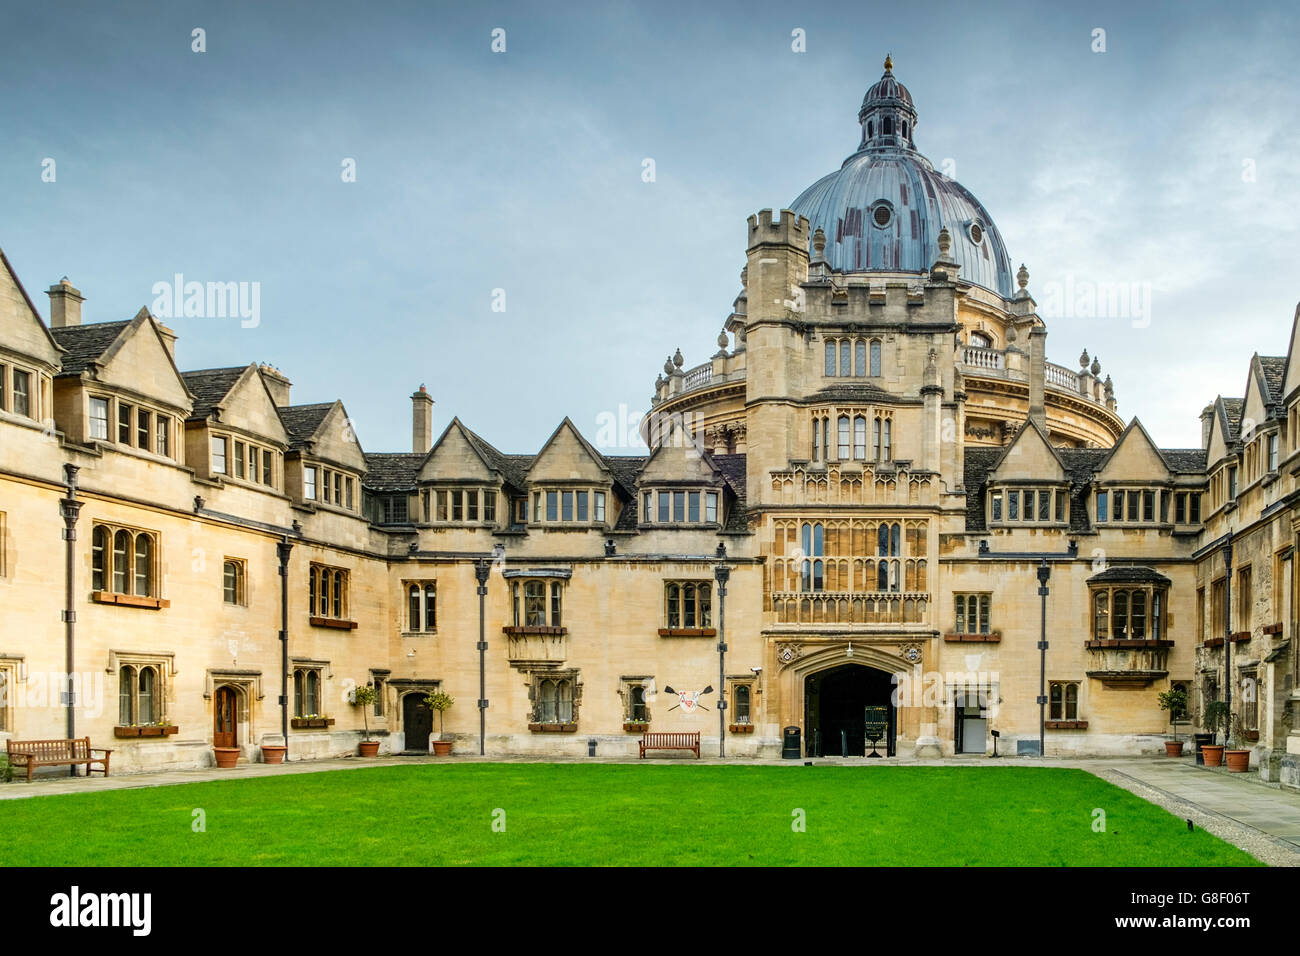 Front Quad of Brasenose College Oxford avec le dôme de la caméra Radcliffe derrière, Oxford University, Oxfordshire, Royaume-Uni Banque D'Images